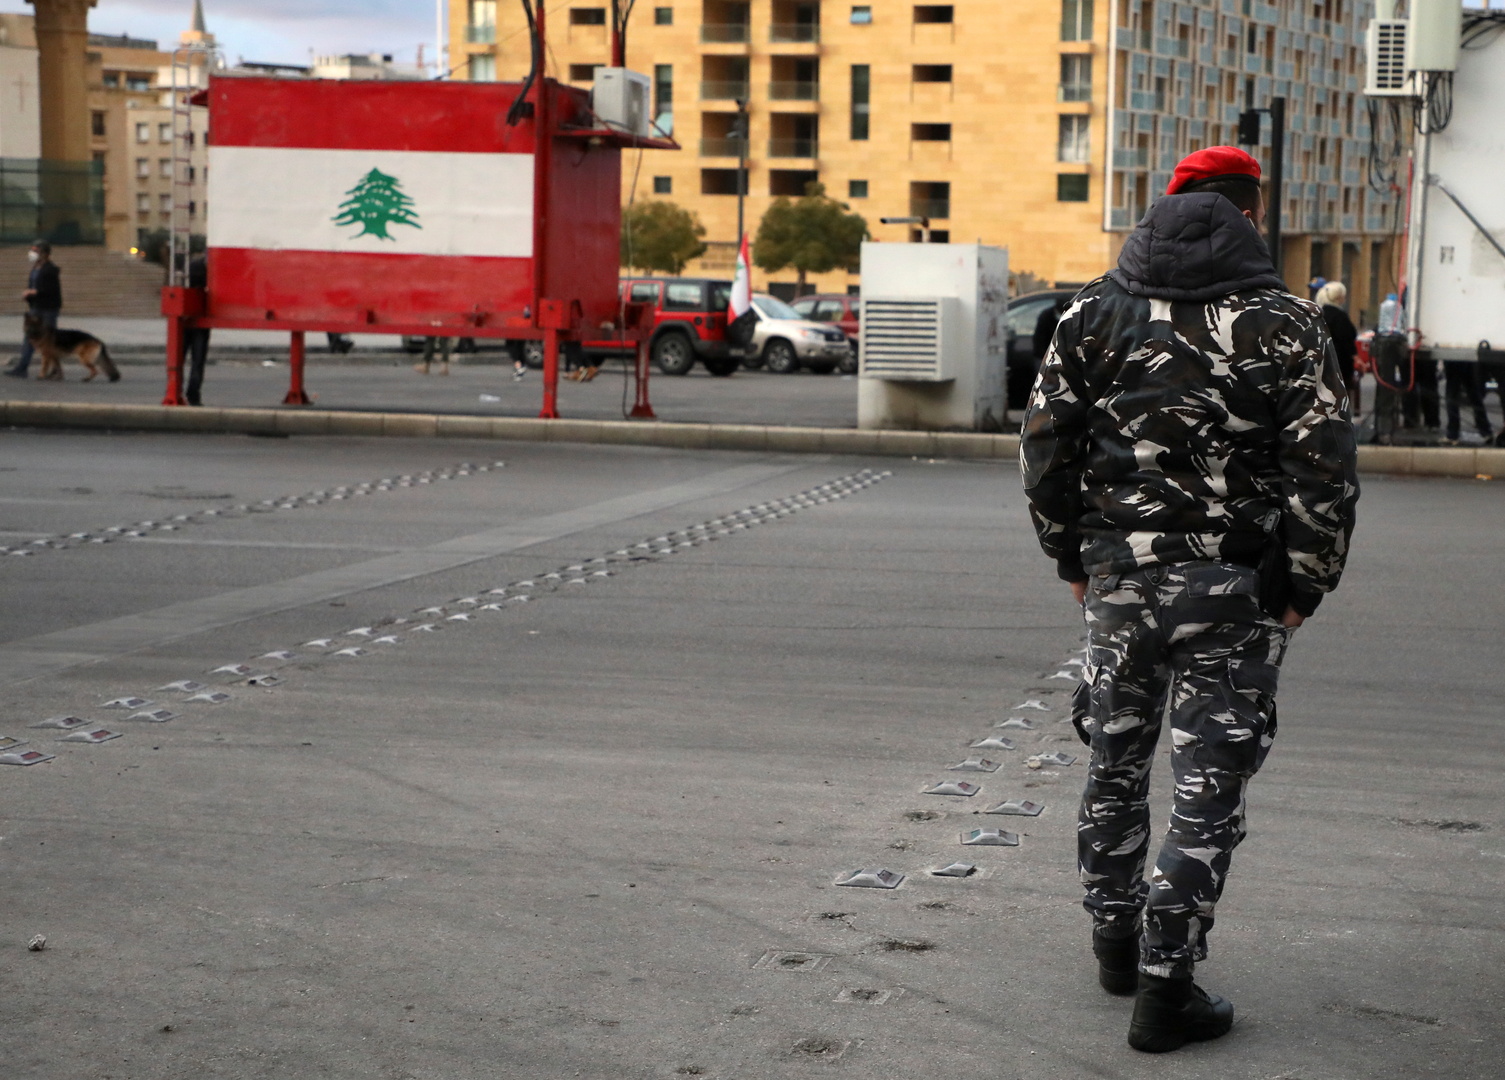 Lebanon ... A citizen robs a woman through 